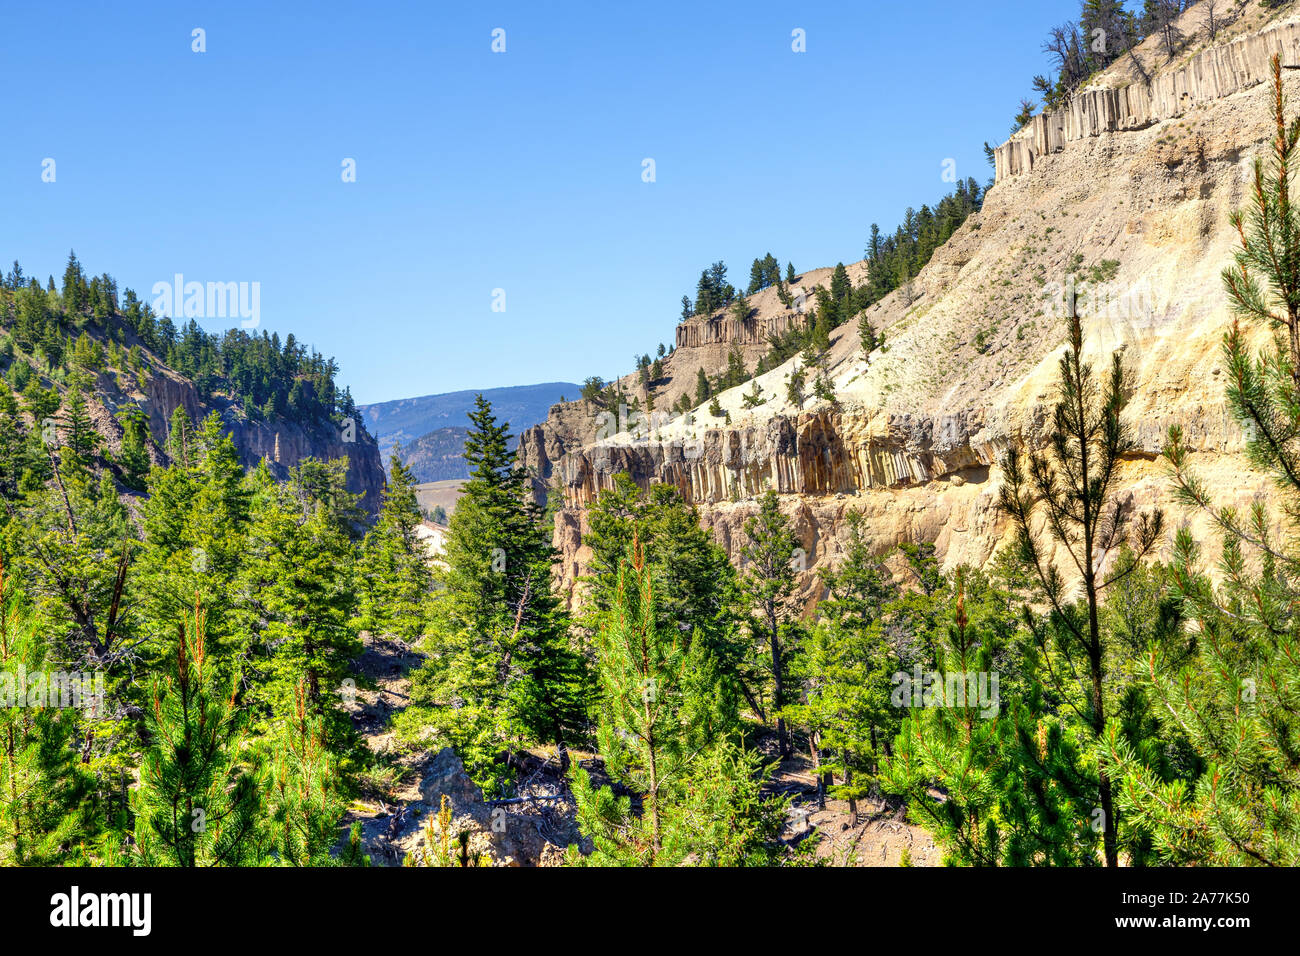 Rupe a strapiombo nella torre rientrano nel Parco Nazionale di Yellowstone sono enormi colonne di roccia formata da un flusso di lava 1,3 milioni di anni fa. Il basalto verticale c Foto Stock